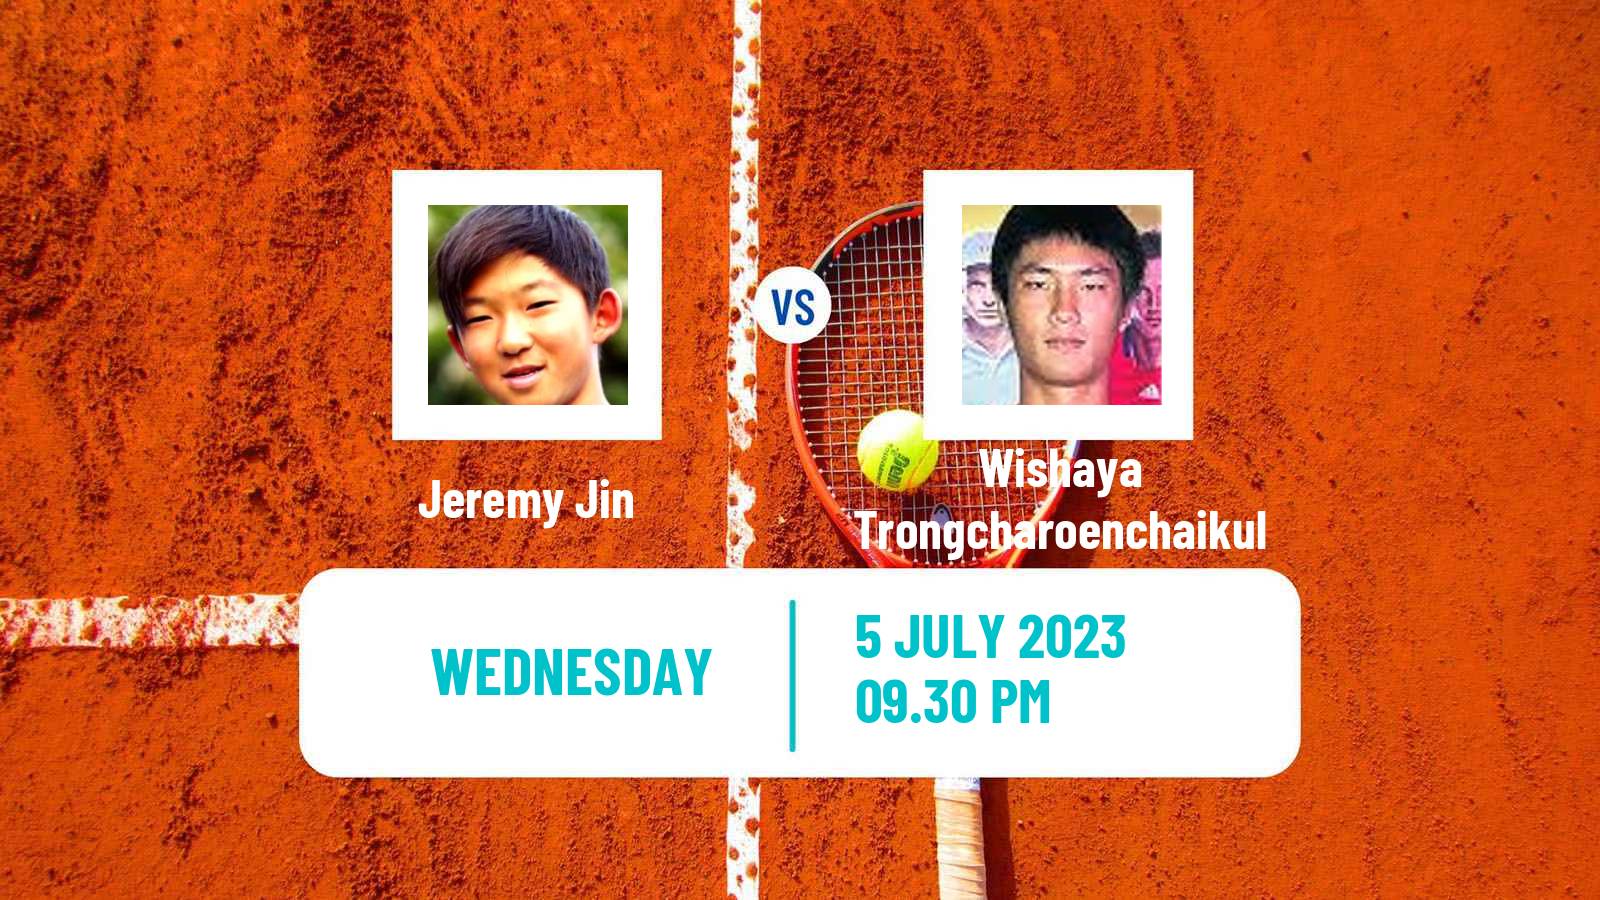 Tennis ITF M15 Tianjin 4 Men Jeremy Jin - Wishaya Trongcharoenchaikul